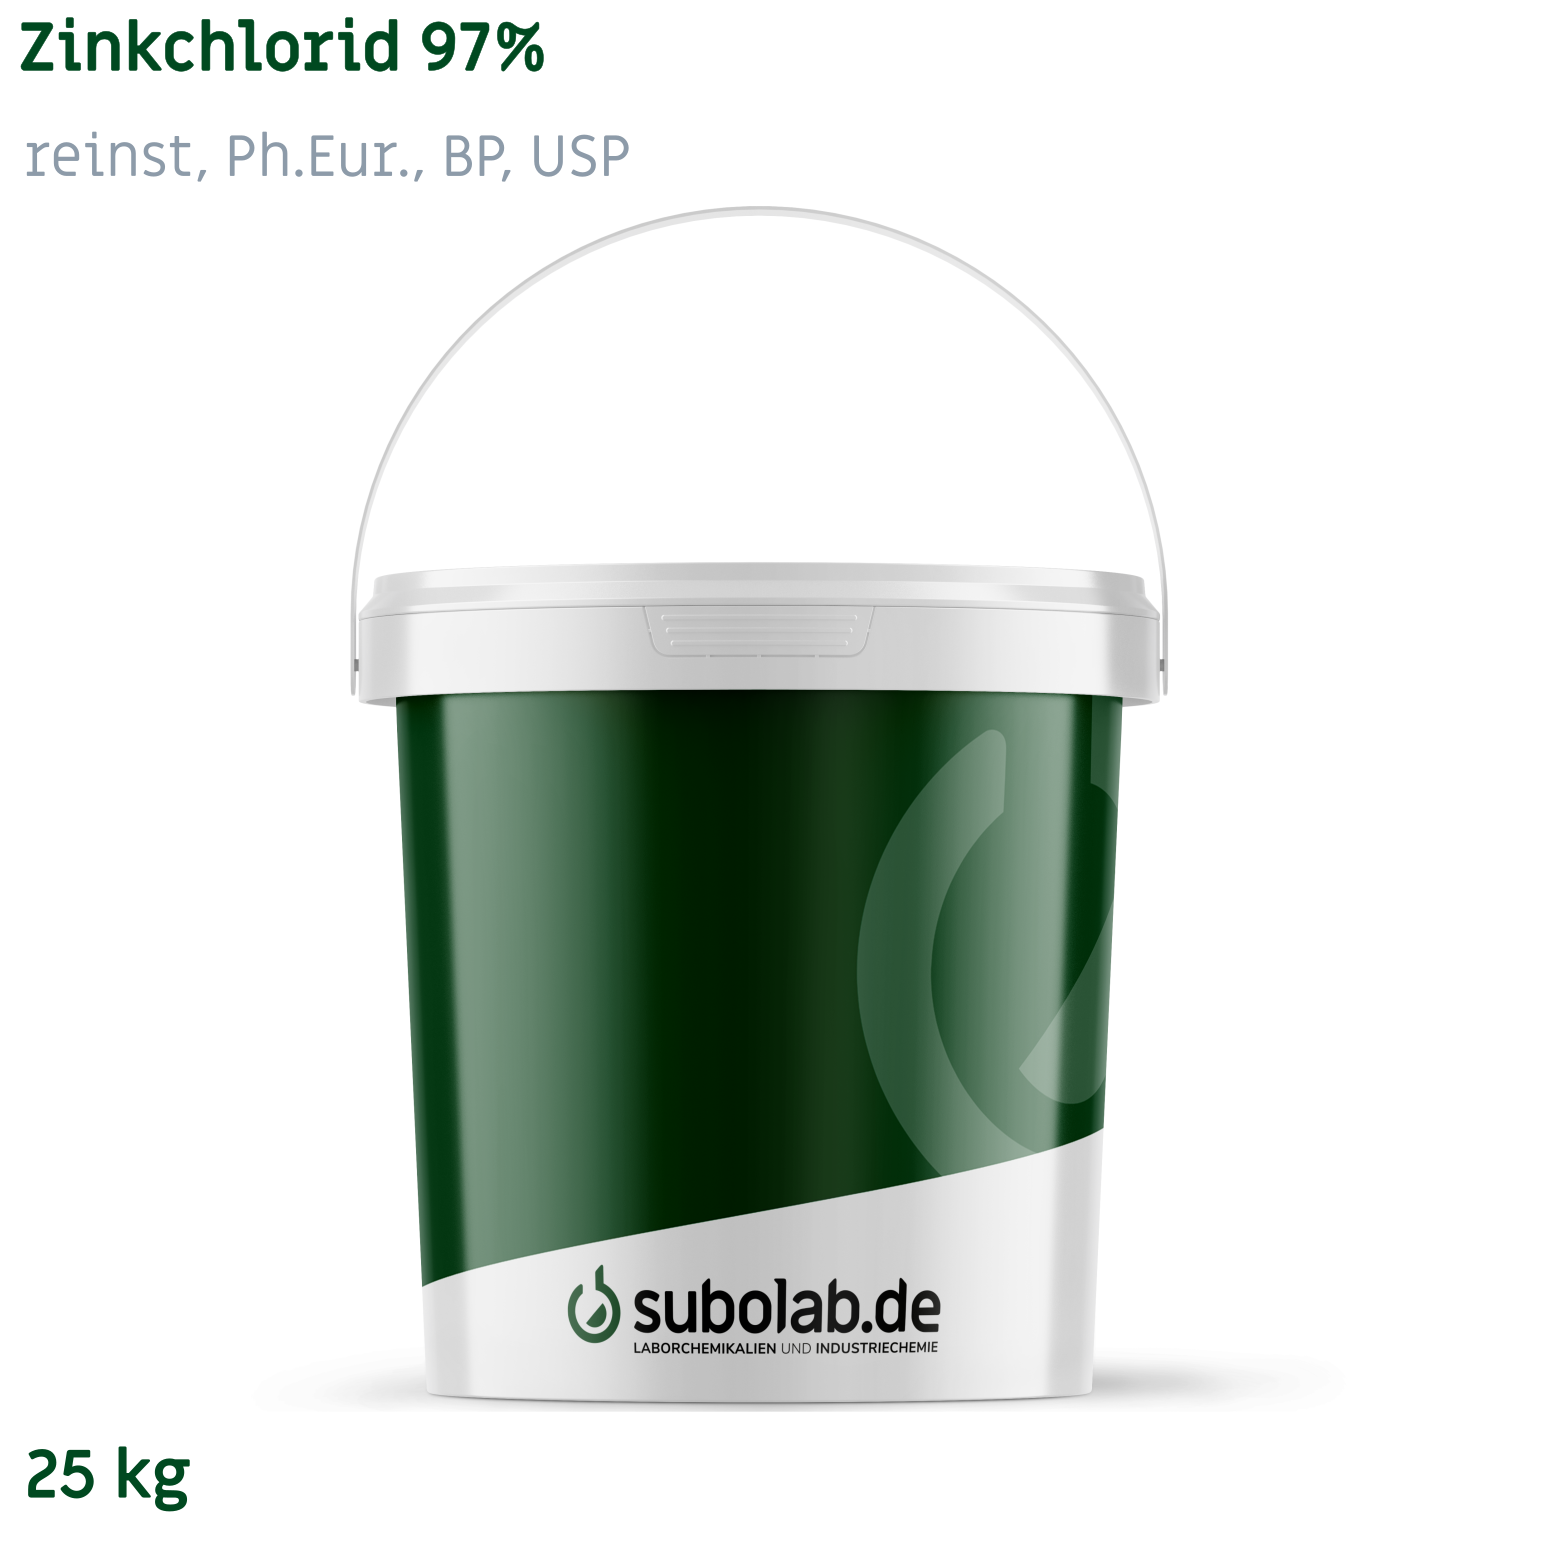 Bild von Zinkchlorid 97% reinst, Ph.Eur., BP, USP (25 kg)